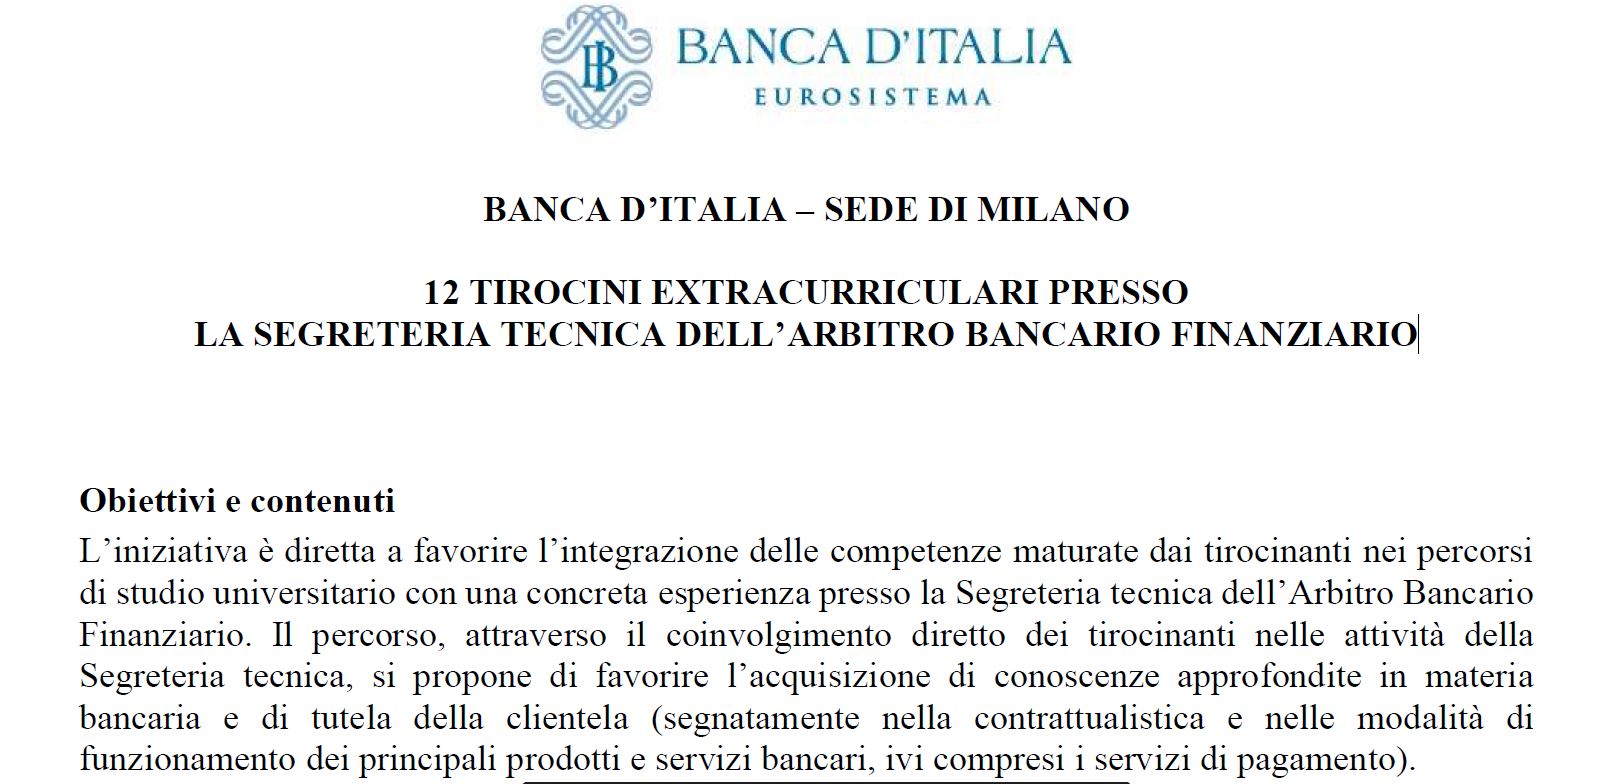 
	BANCA D’ITALIA – SEDE DI MILANO

	12 TIROCINI EXTRACURRICULARI PRESSO LA SEGRETERIA TECNICA DELL’ARBITRO BANCARIO FINANZIARIO